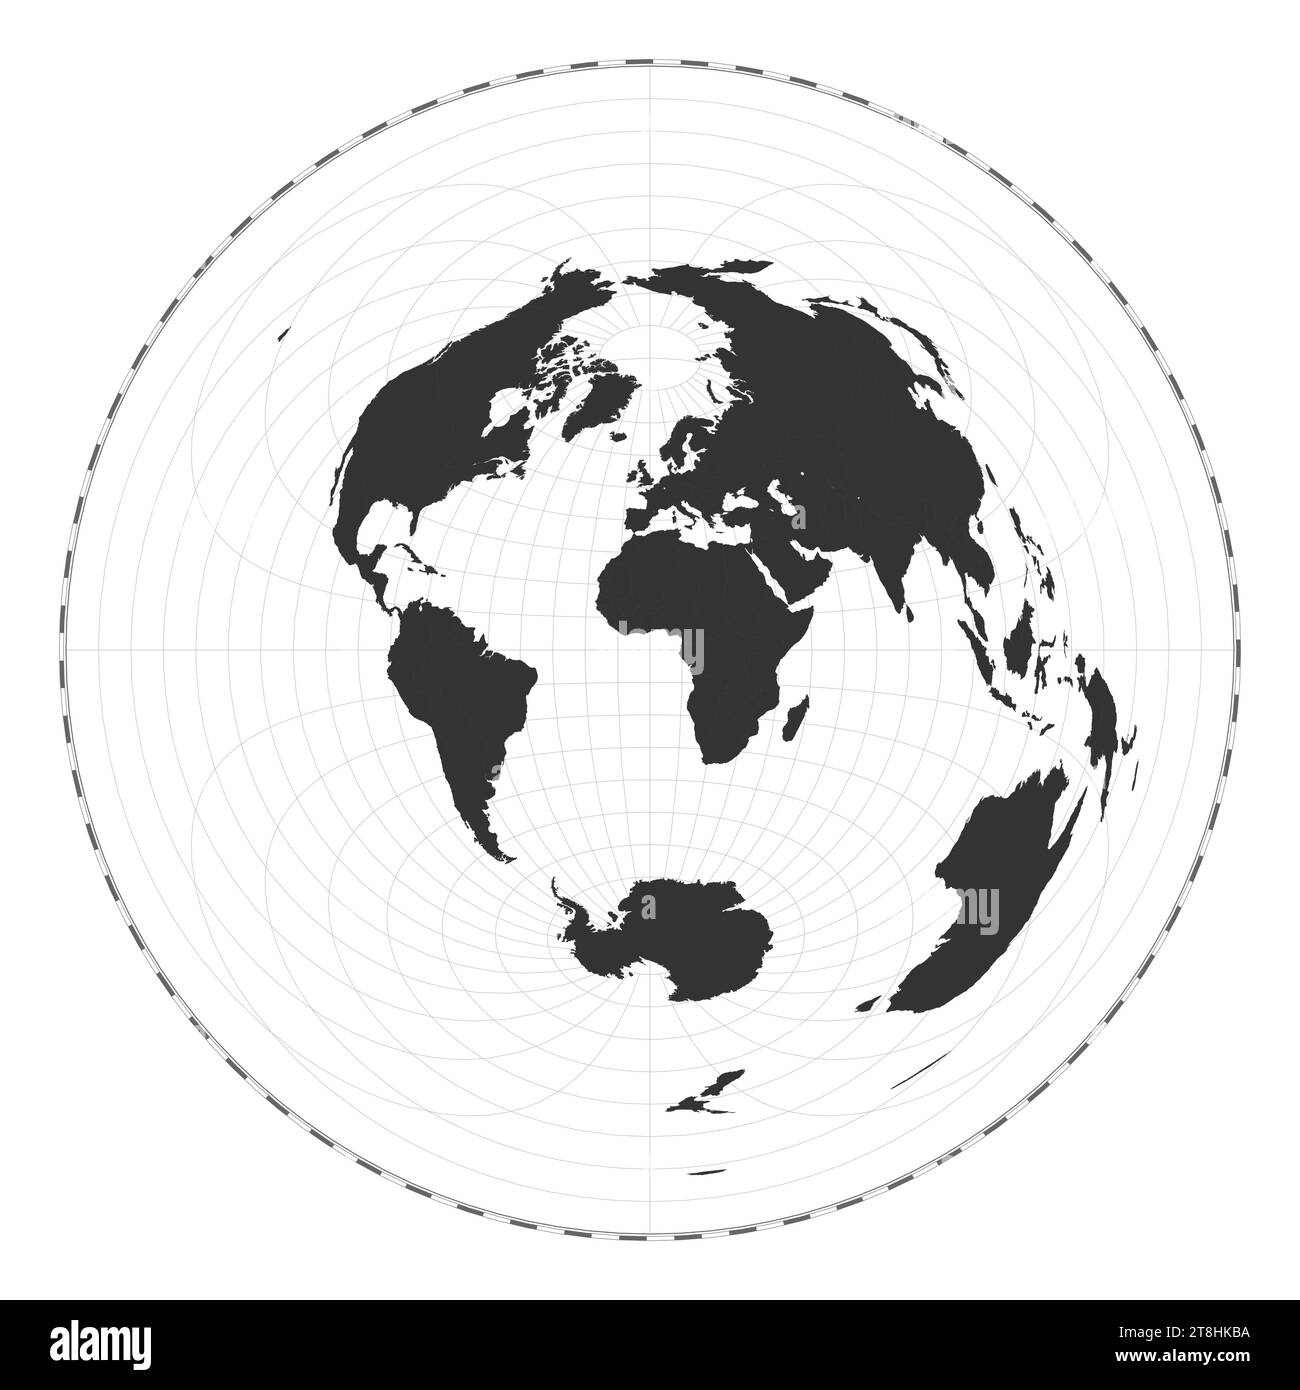 Vector Mapa Del Mundo Proyección Equidistante Azimutal Mapa Geográfico De Mundo Llano Con 0441